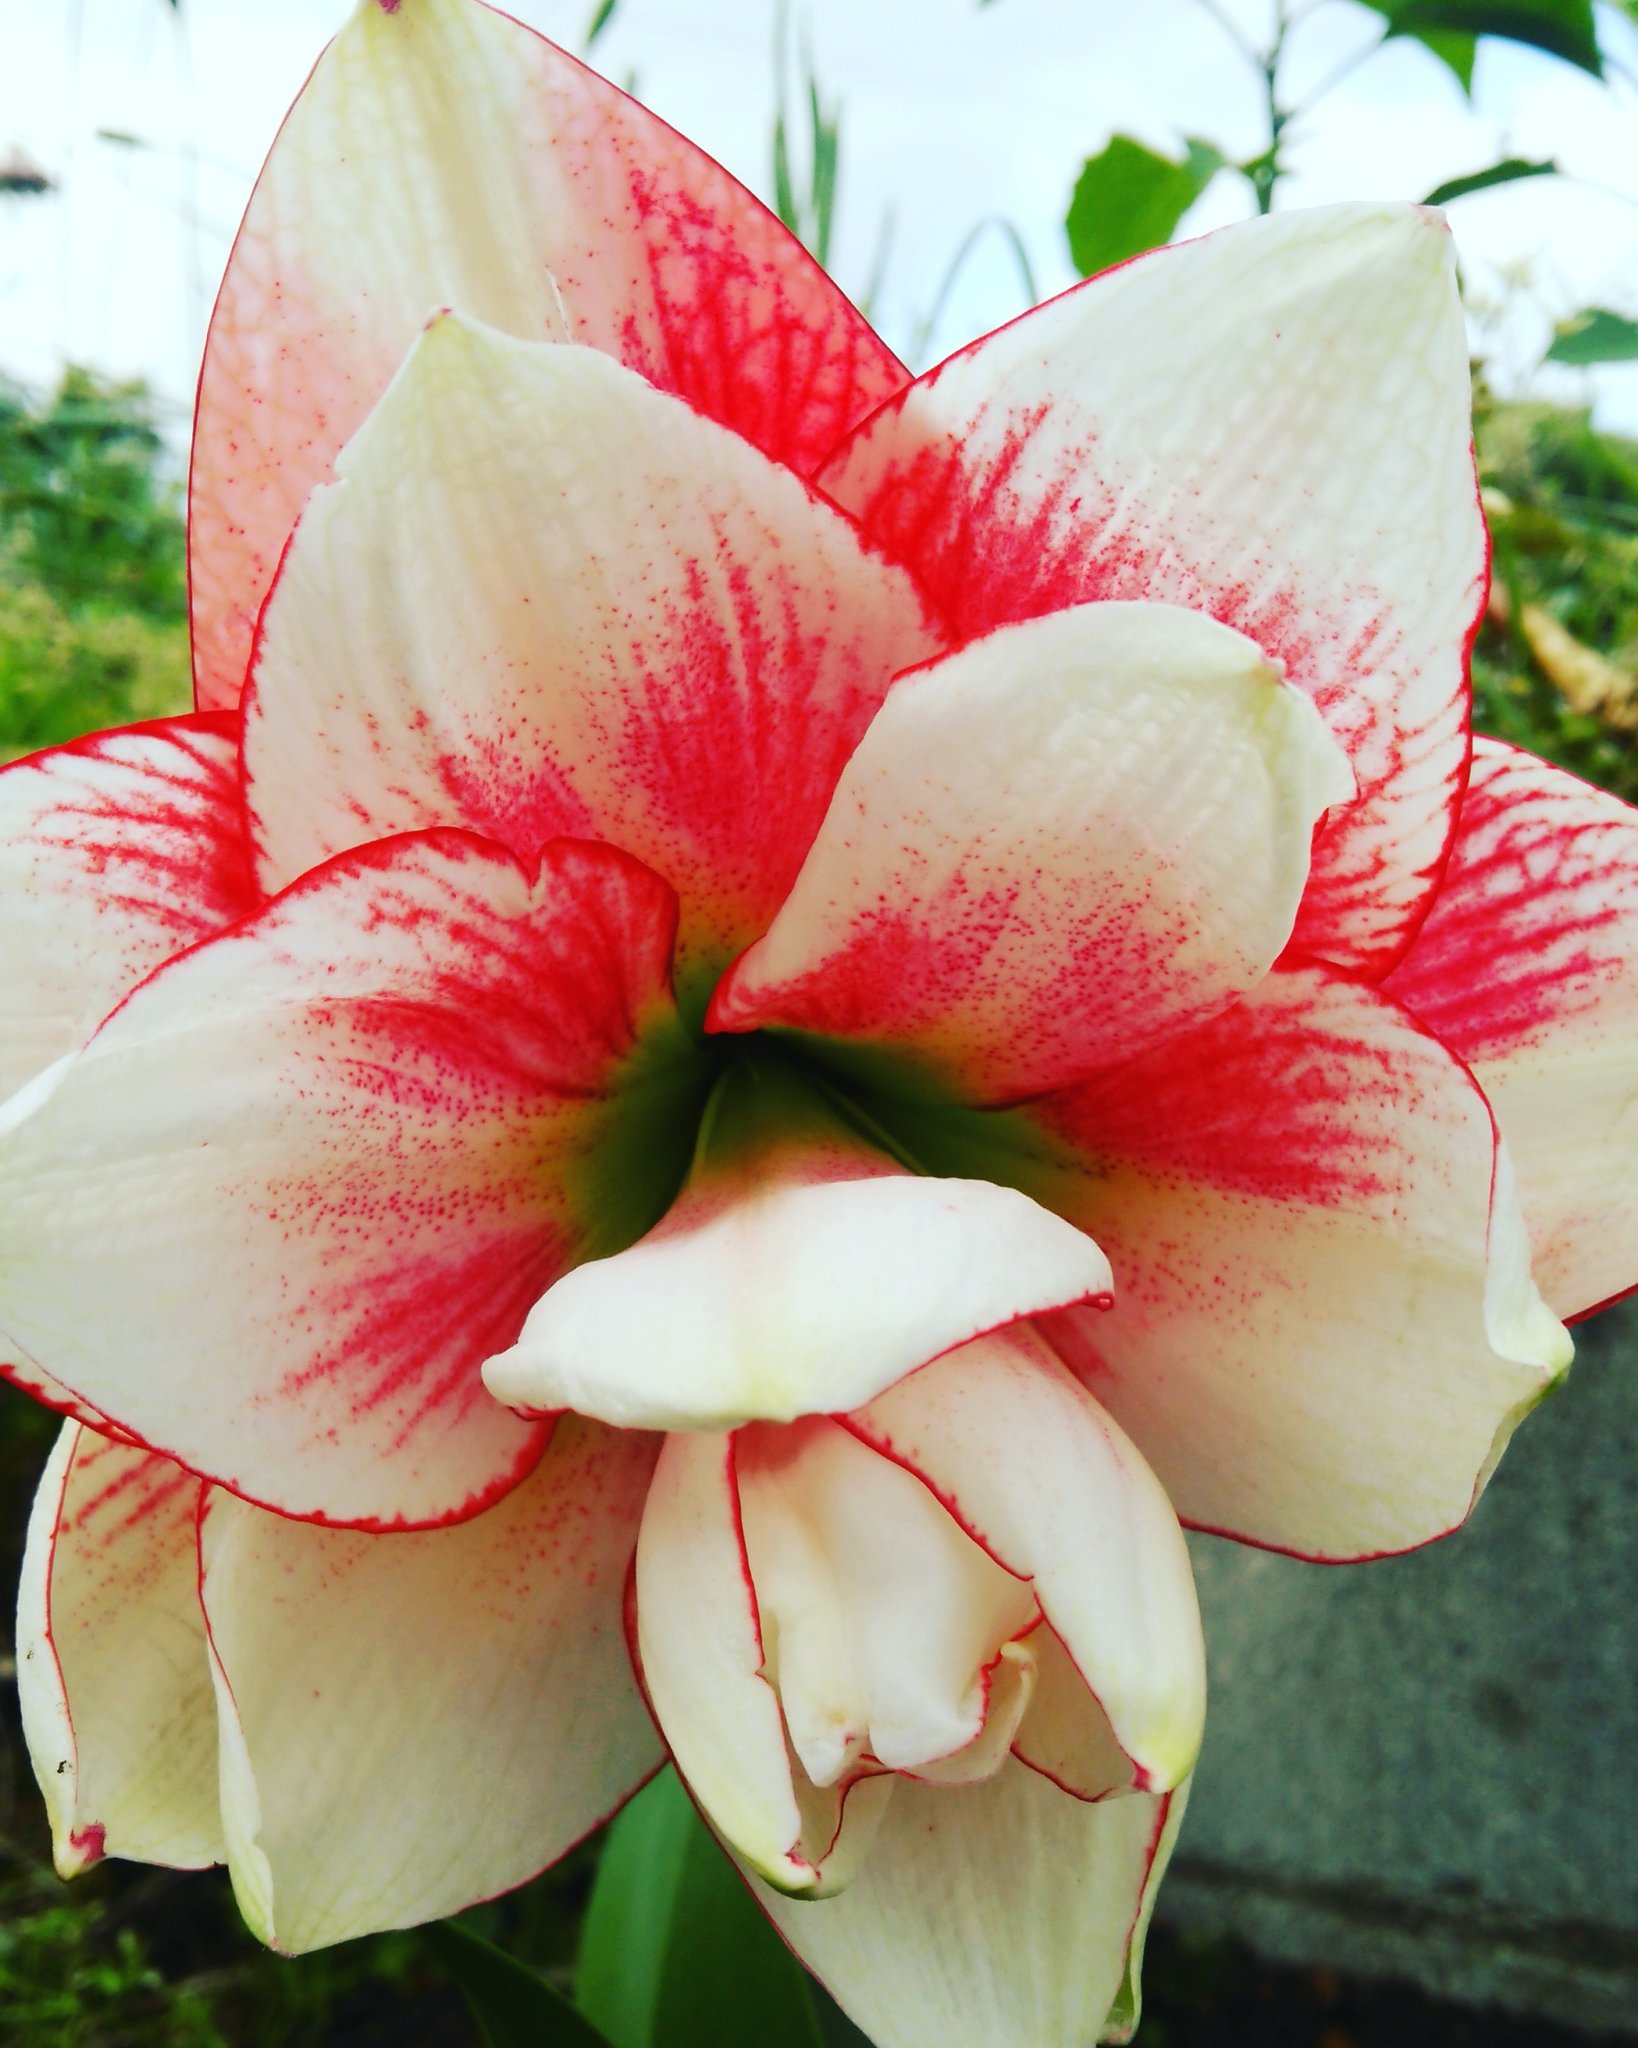 あかね 赤白のアマリリスエルバス花 アマリリス エルバス 可愛い かわいいよ 花が好き かわいい 綺麗 葉っぱ いいねください いいね返し フォロー フォローお願いします フォロー返し お願いします T Co 4spaimcuef Twitter